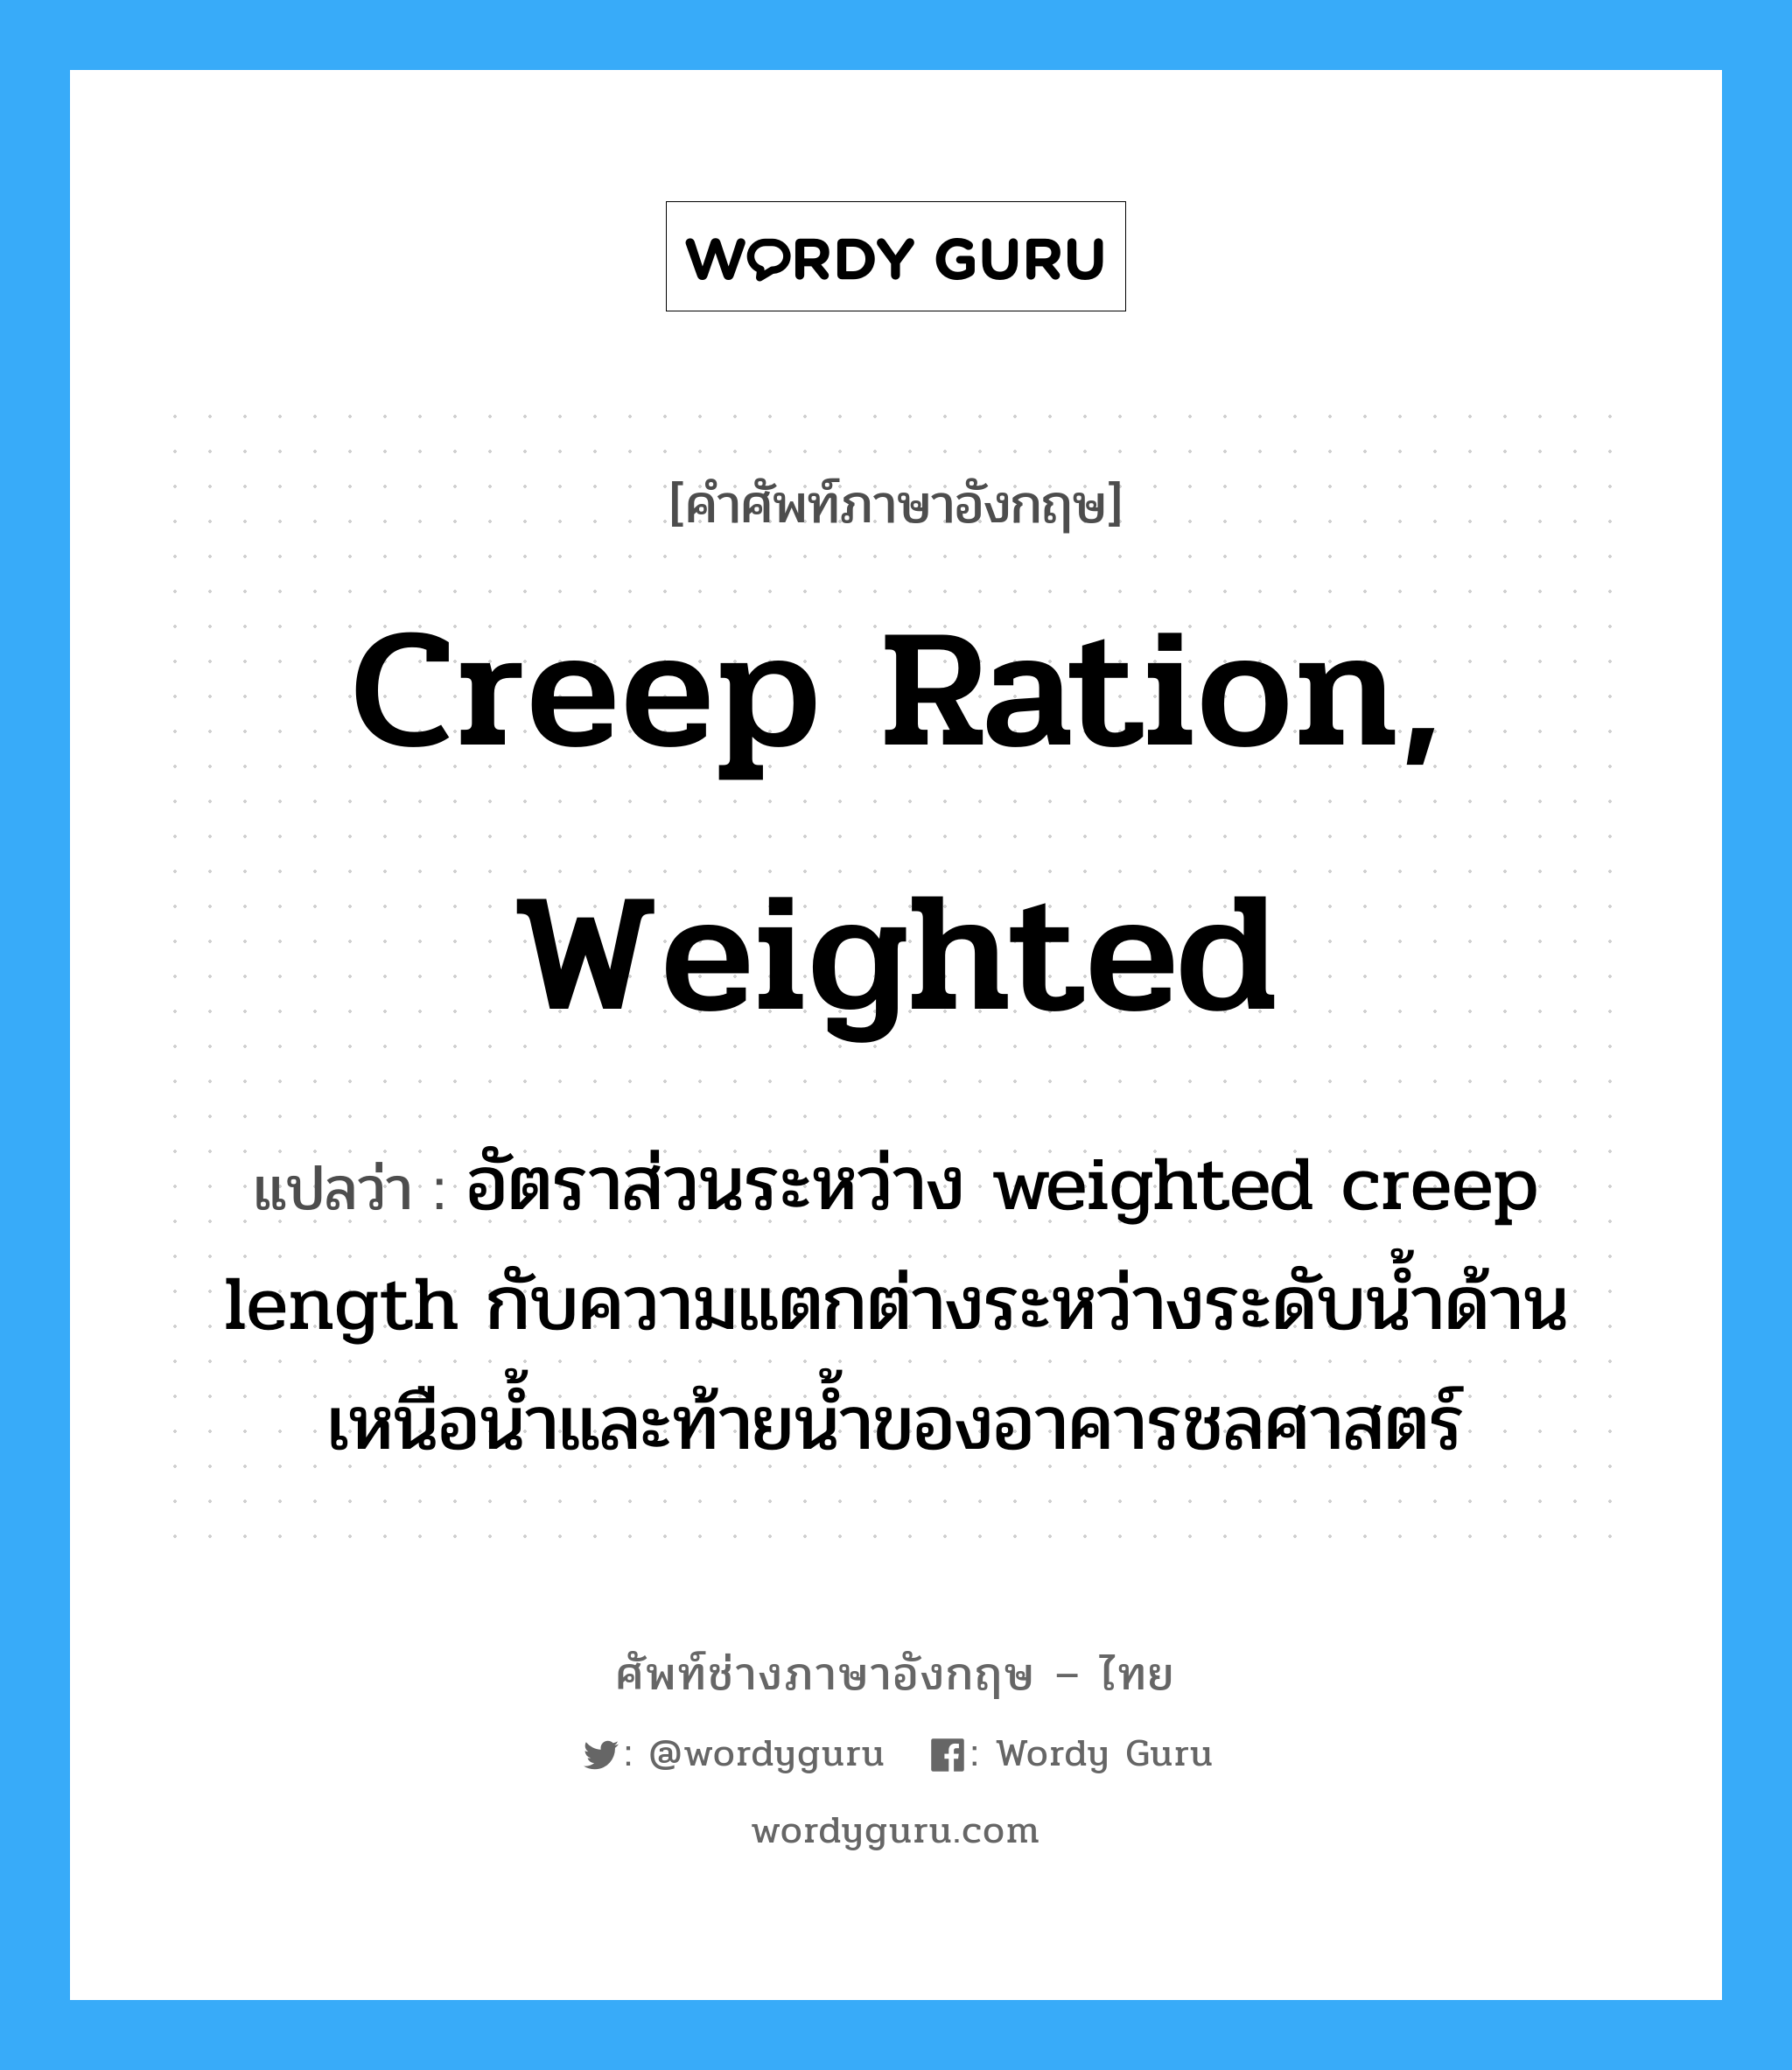 creep ration, weighted แปลว่า?, คำศัพท์ช่างภาษาอังกฤษ - ไทย creep ration, weighted คำศัพท์ภาษาอังกฤษ creep ration, weighted แปลว่า อัตราส่วนระหว่าง weighted creep length กับความแตกต่างระหว่างระดับน้ำด้านเหนือน้ำและท้ายน้ำของอาคารชลศาสตร์